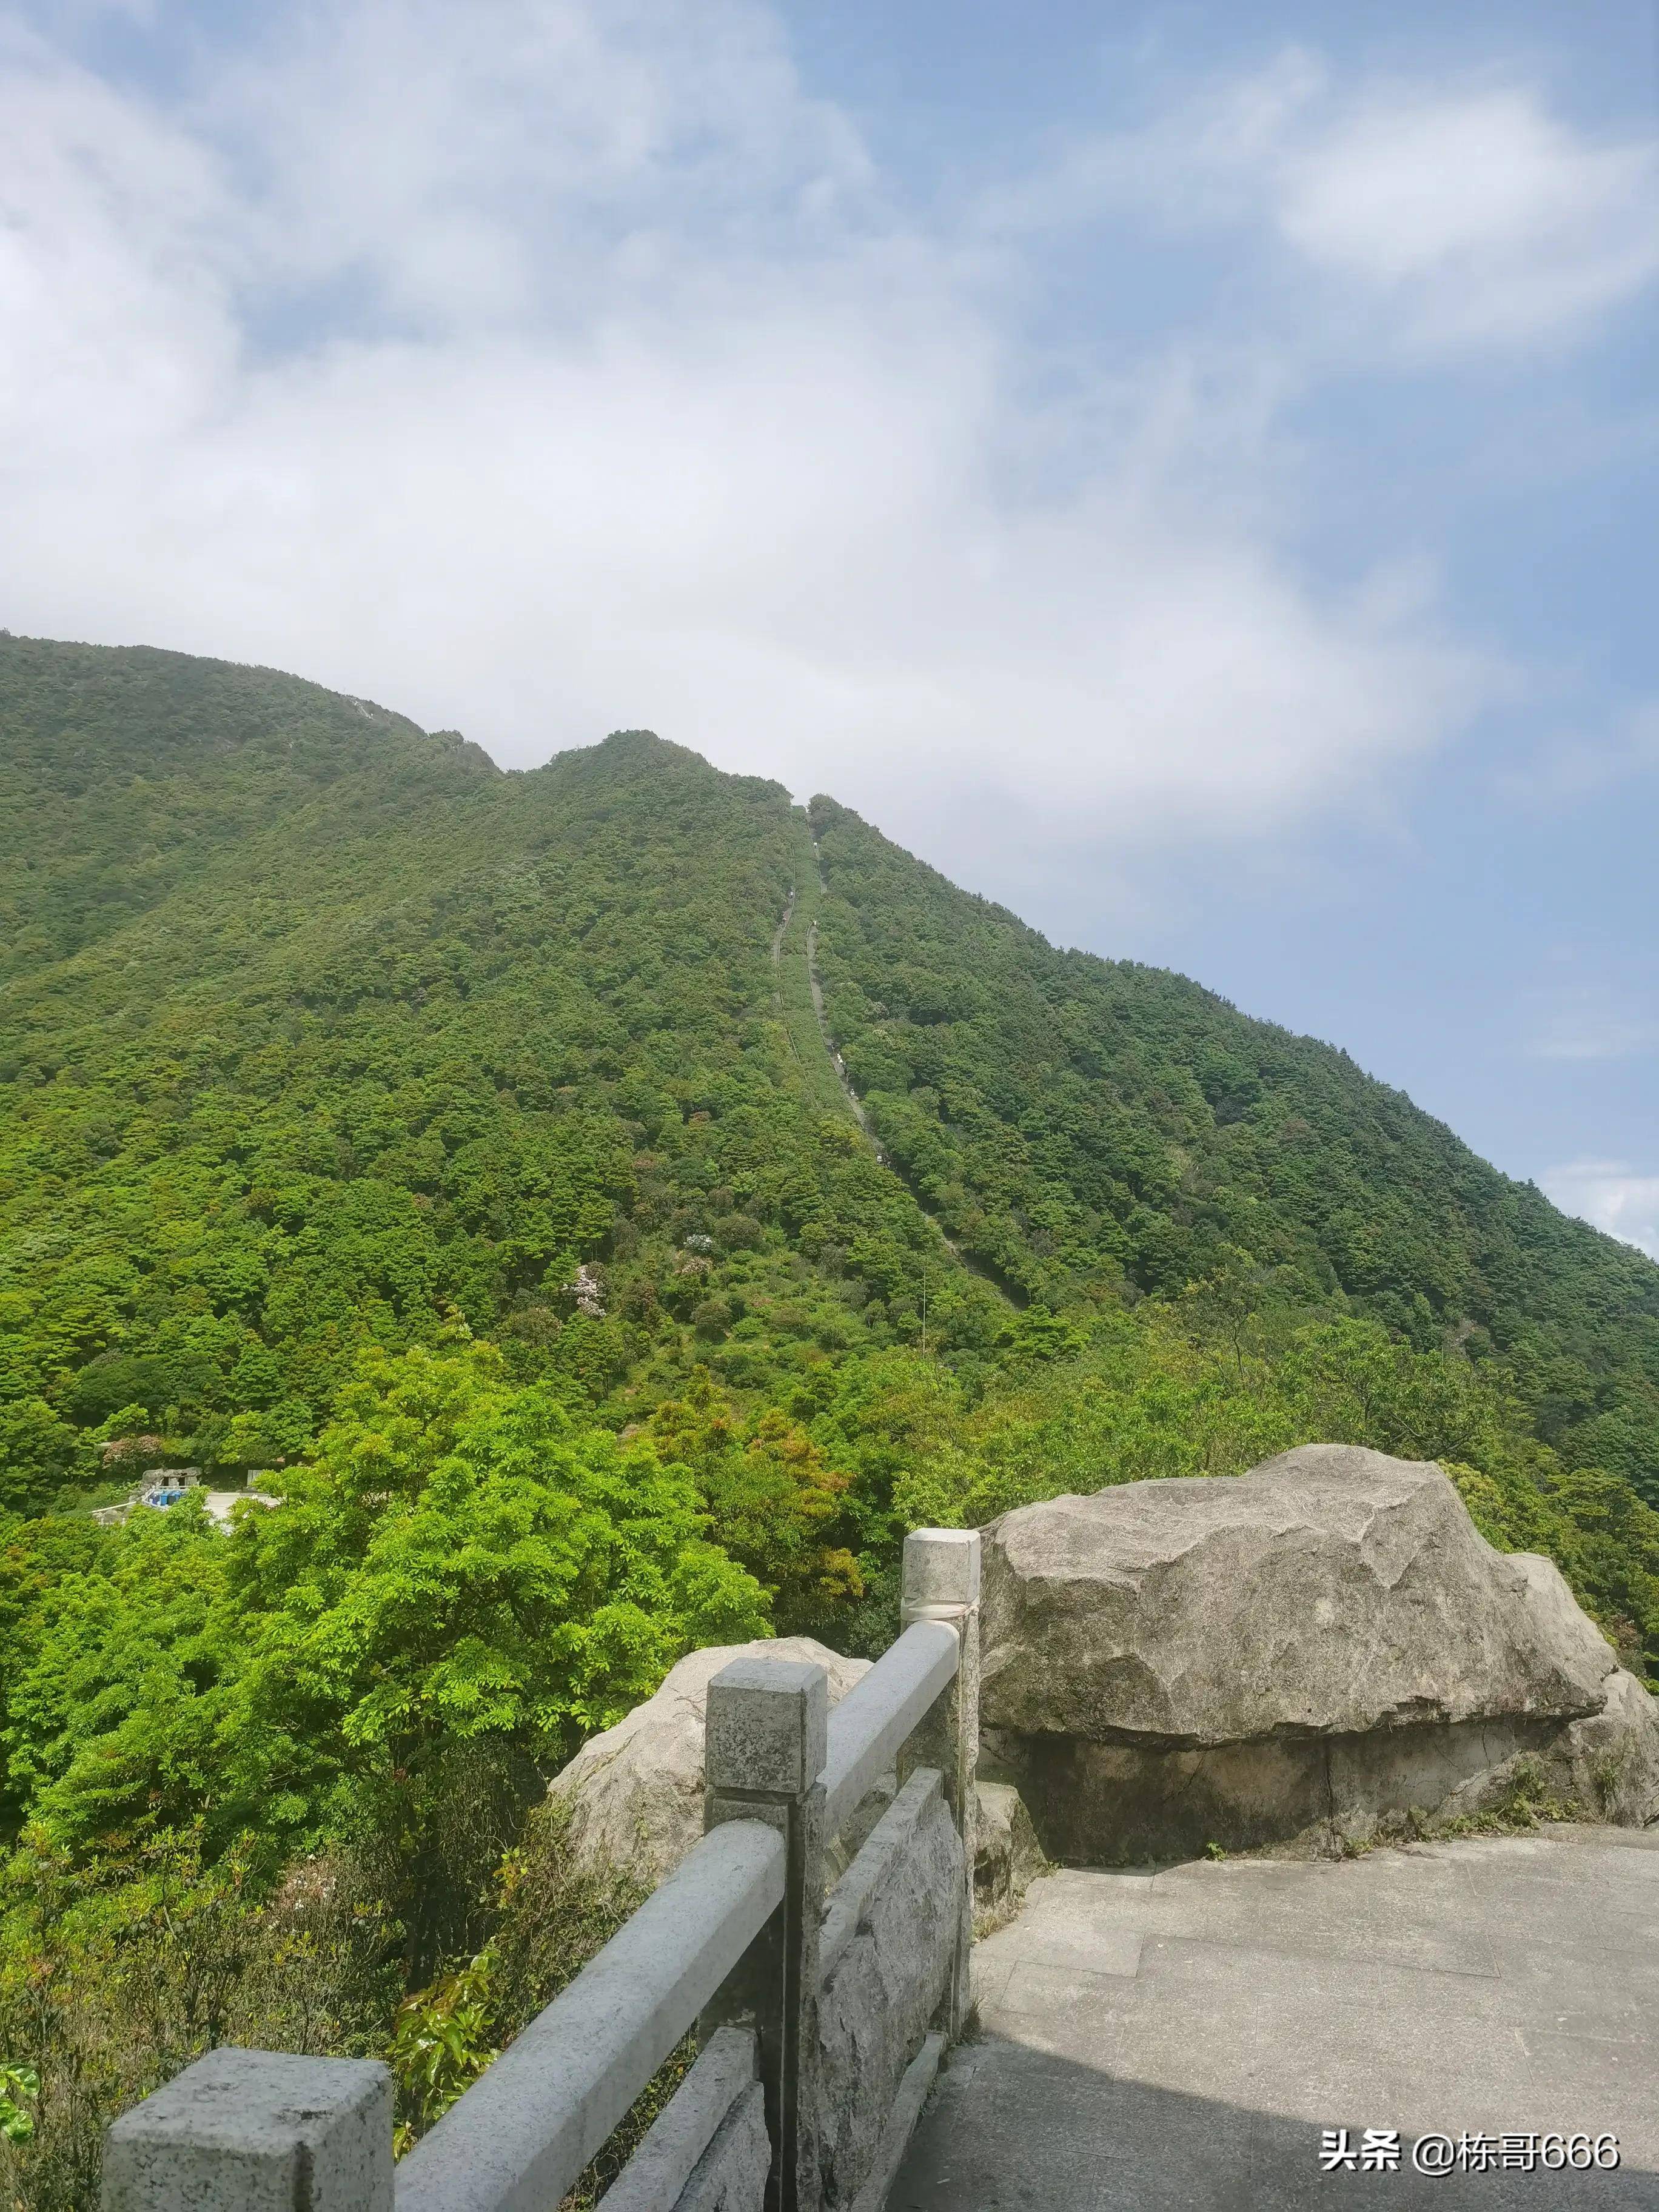 深圳梧桐山的好汉坡确实具有挑战性登顶鹏城第一峰其乐无穷